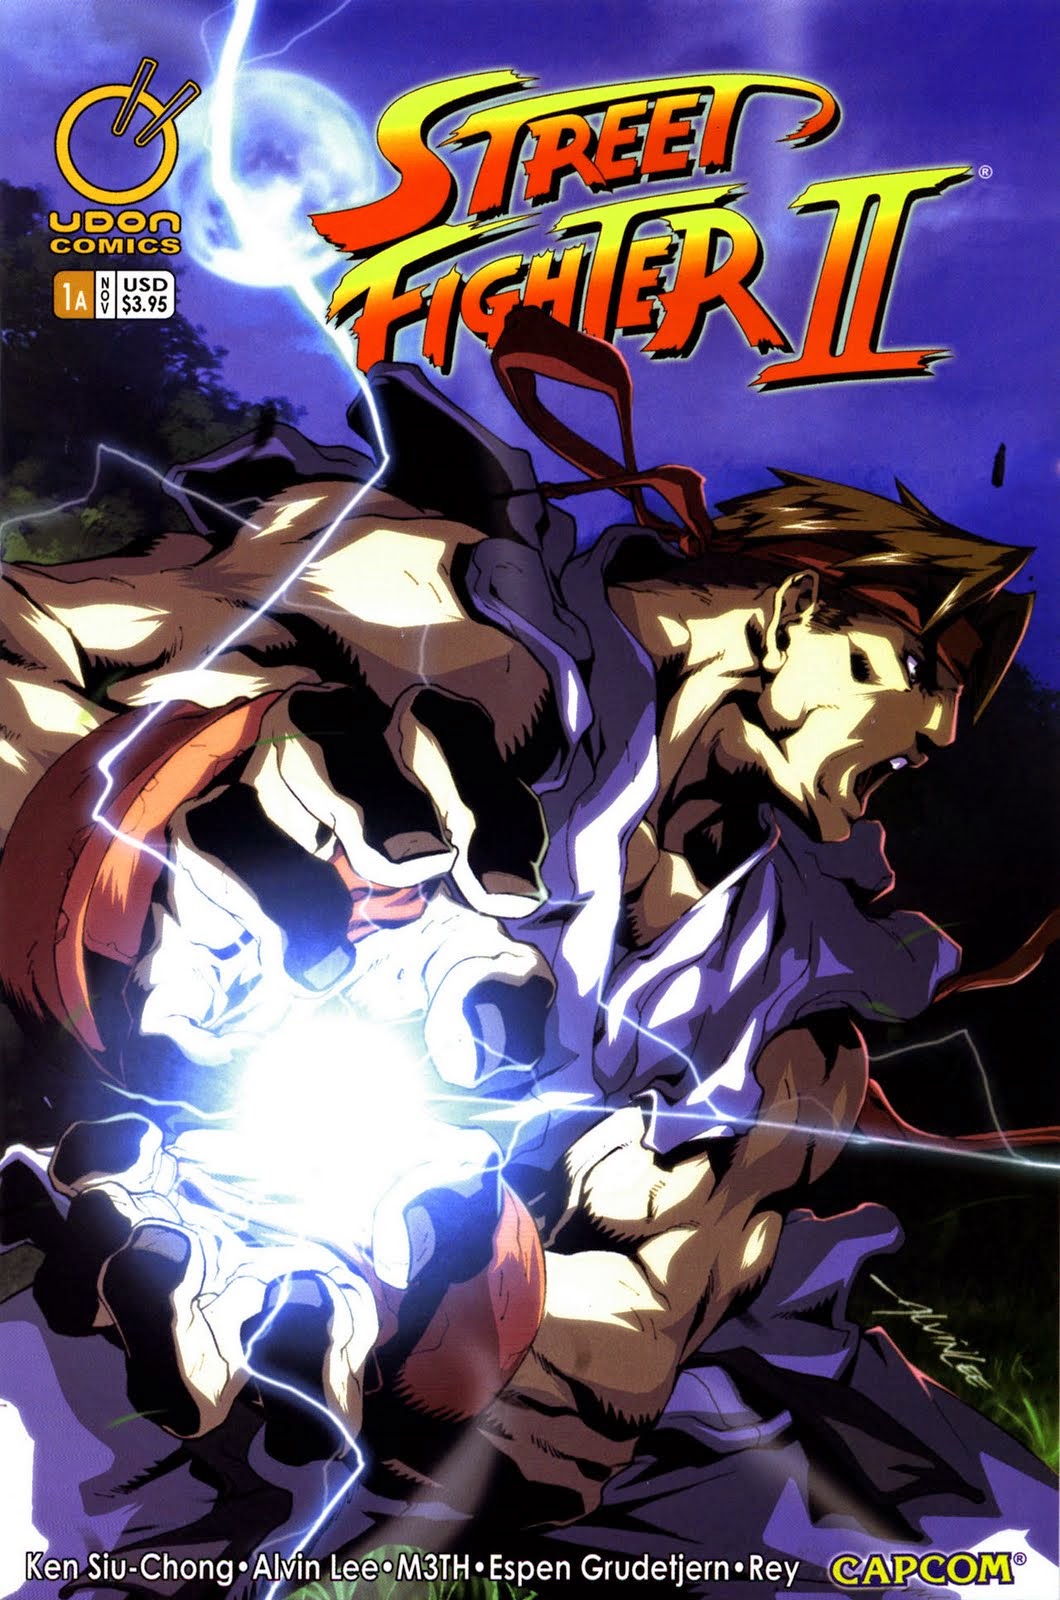 Akuma artwork #6, Super Street Fighter 2 Turbo HD Remix